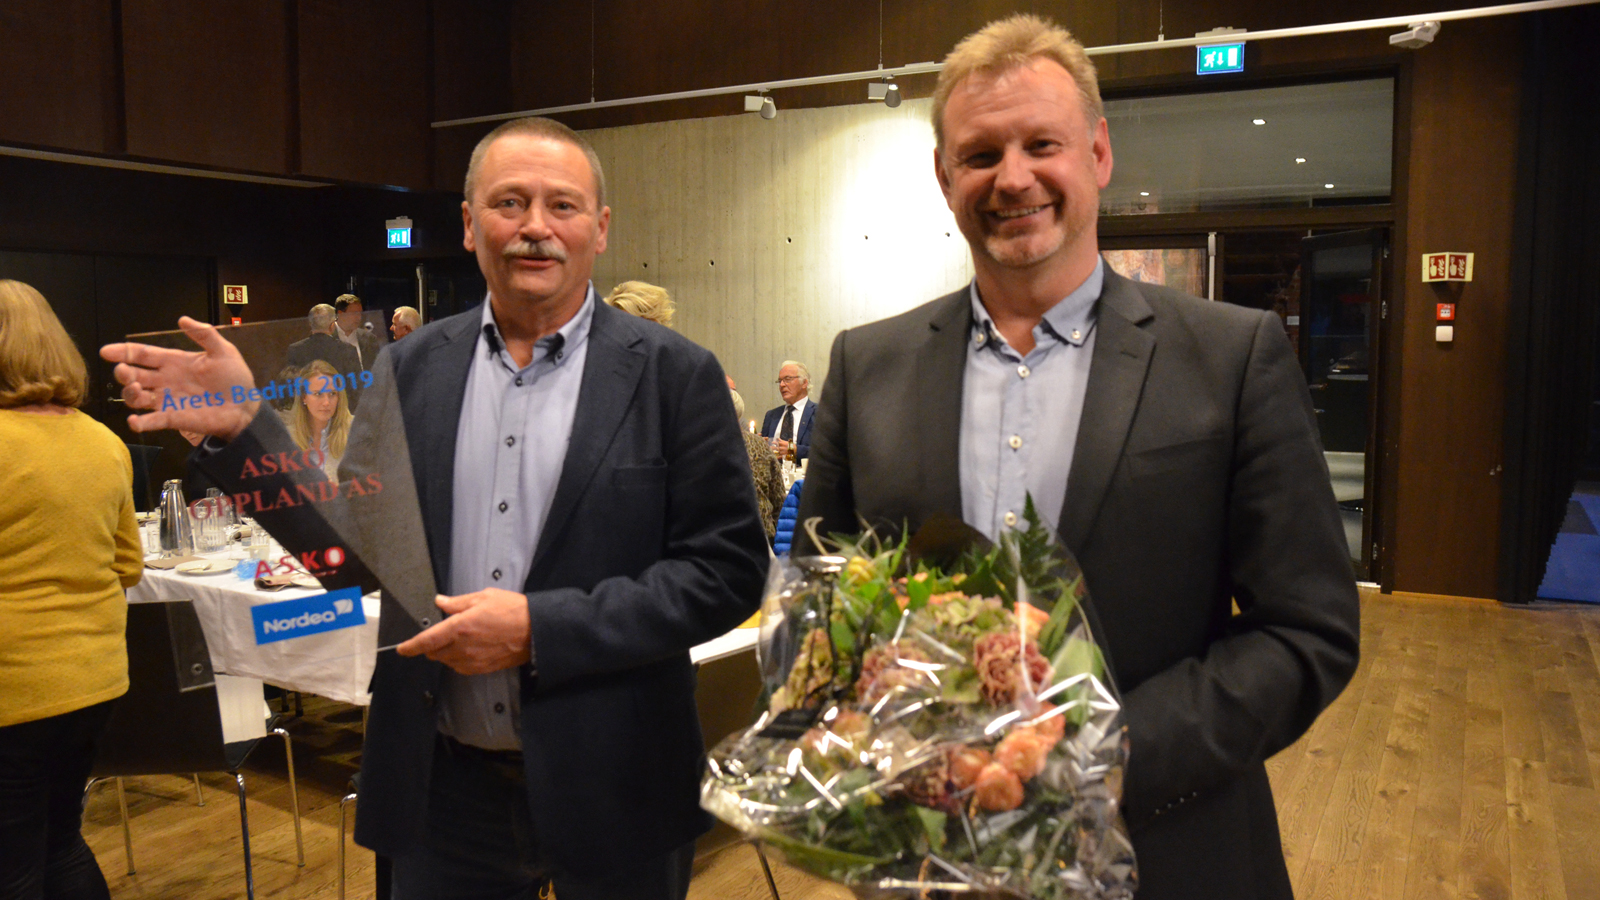 ASKO-direktør Asbjørn Vedvik Jensen (t.v.) og økonomisjef Olav Tronrud i ASKO OPPLAND med blomster og plaketten for Årets bedrift 2019